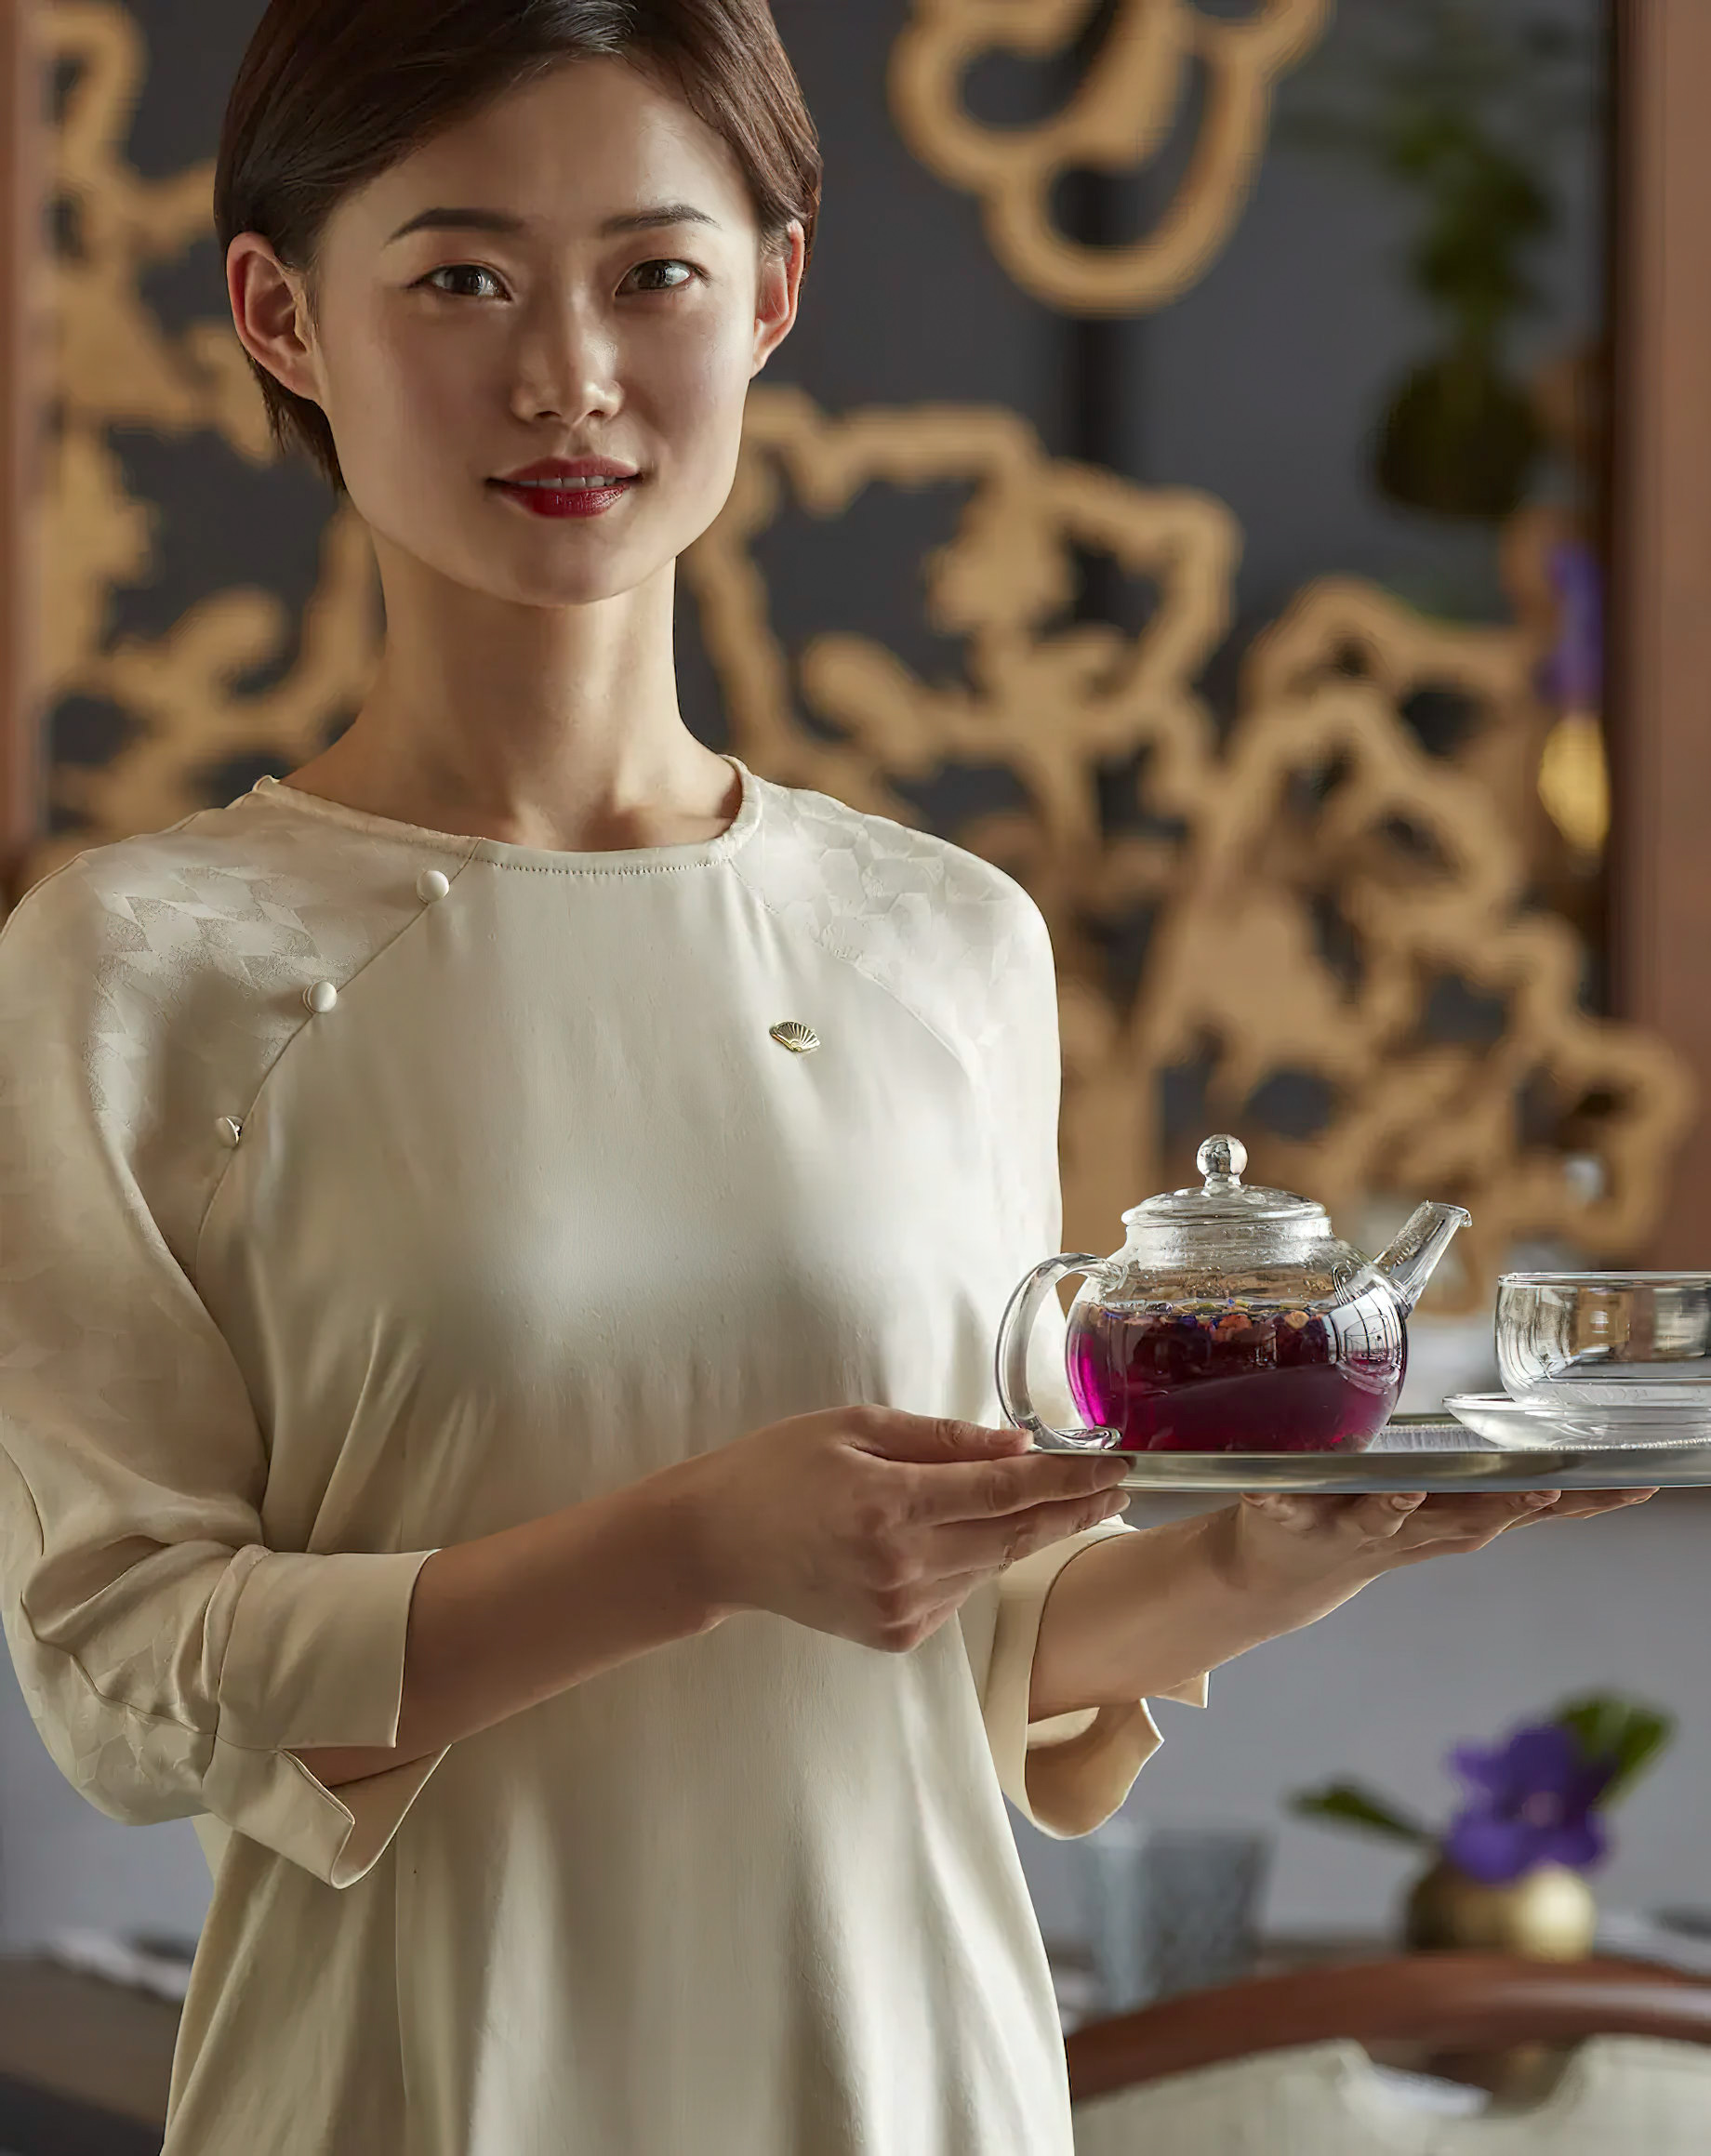 Mandarin Oriental Wangfujing, Beijing Hotel – Beijing, China – Cafe Zi Tea Service